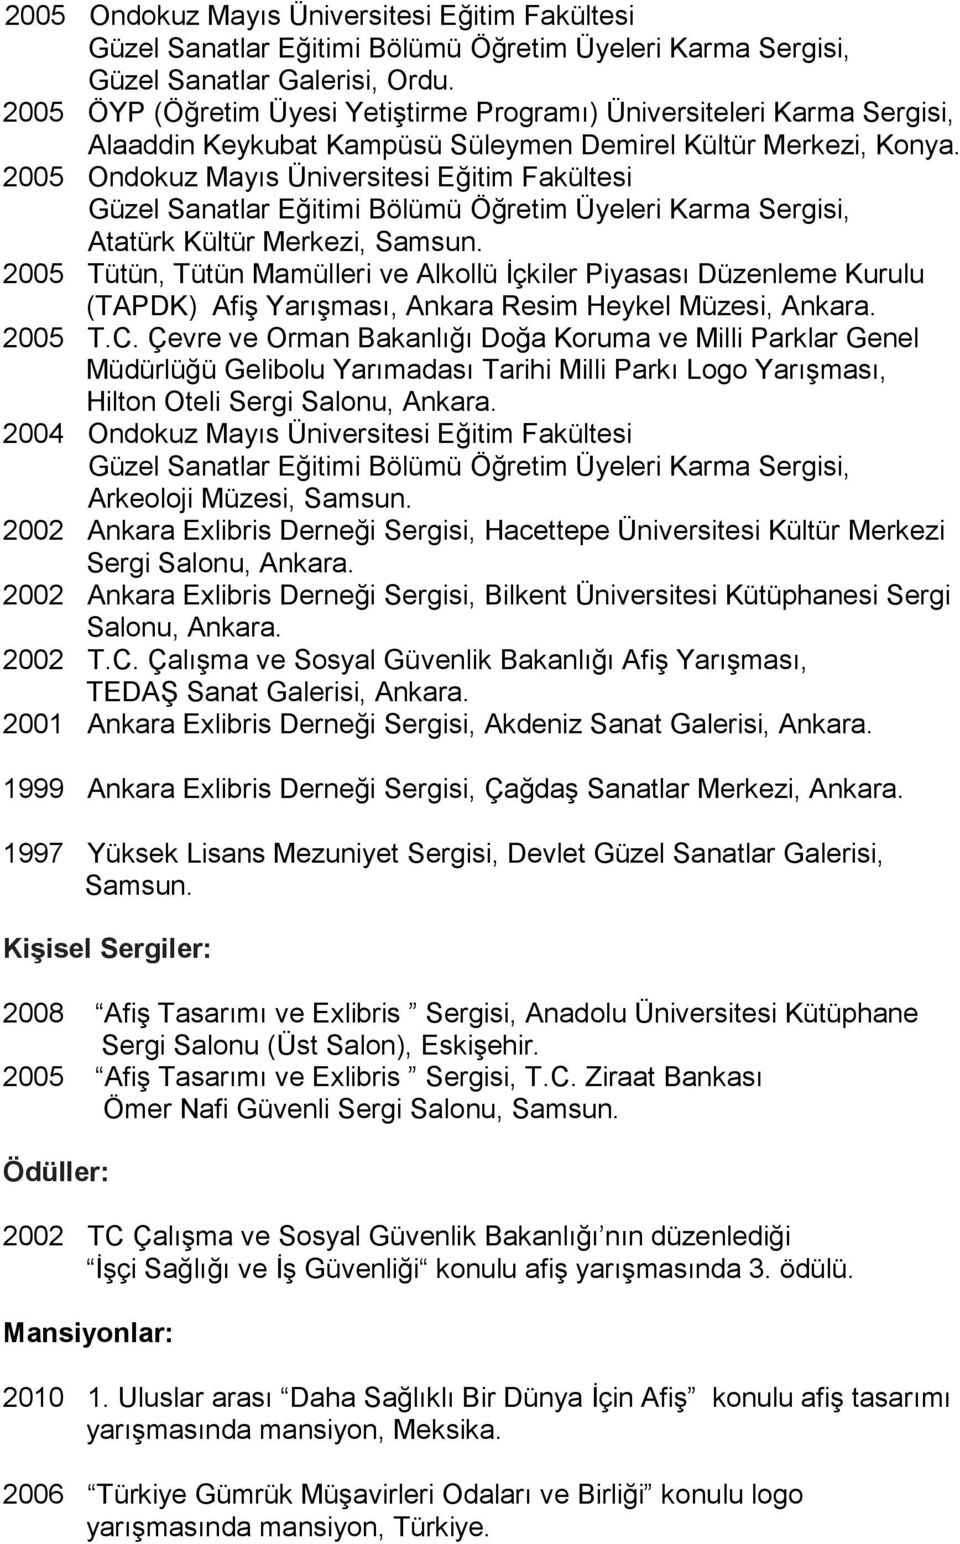 2005 Ondokuz Mayıs Üniversitesi Eğitim Fakültesi Atatürk Kültür Merkezi, Samsun.